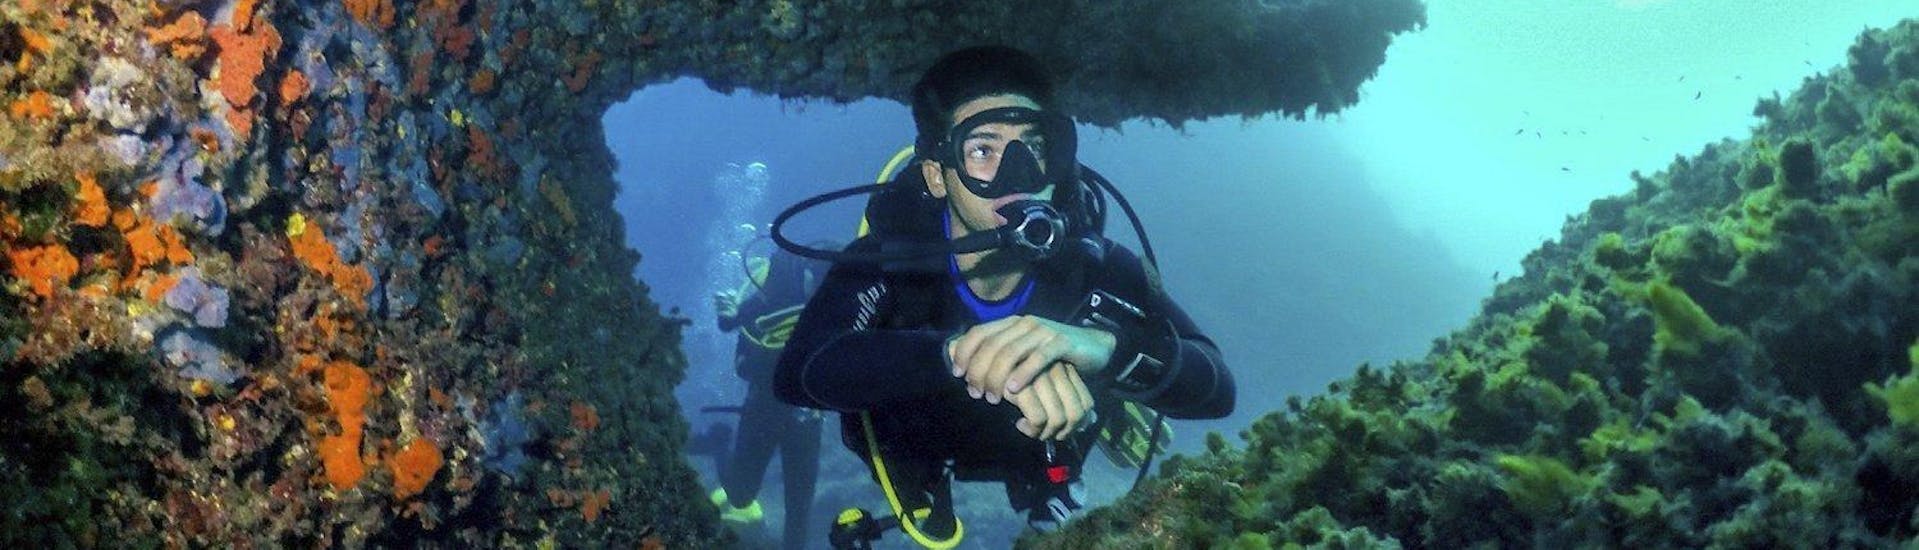 Scuba Diving - Guided Boat Dives from Porto Cristo with Skualo Porto Cristo - Hero image